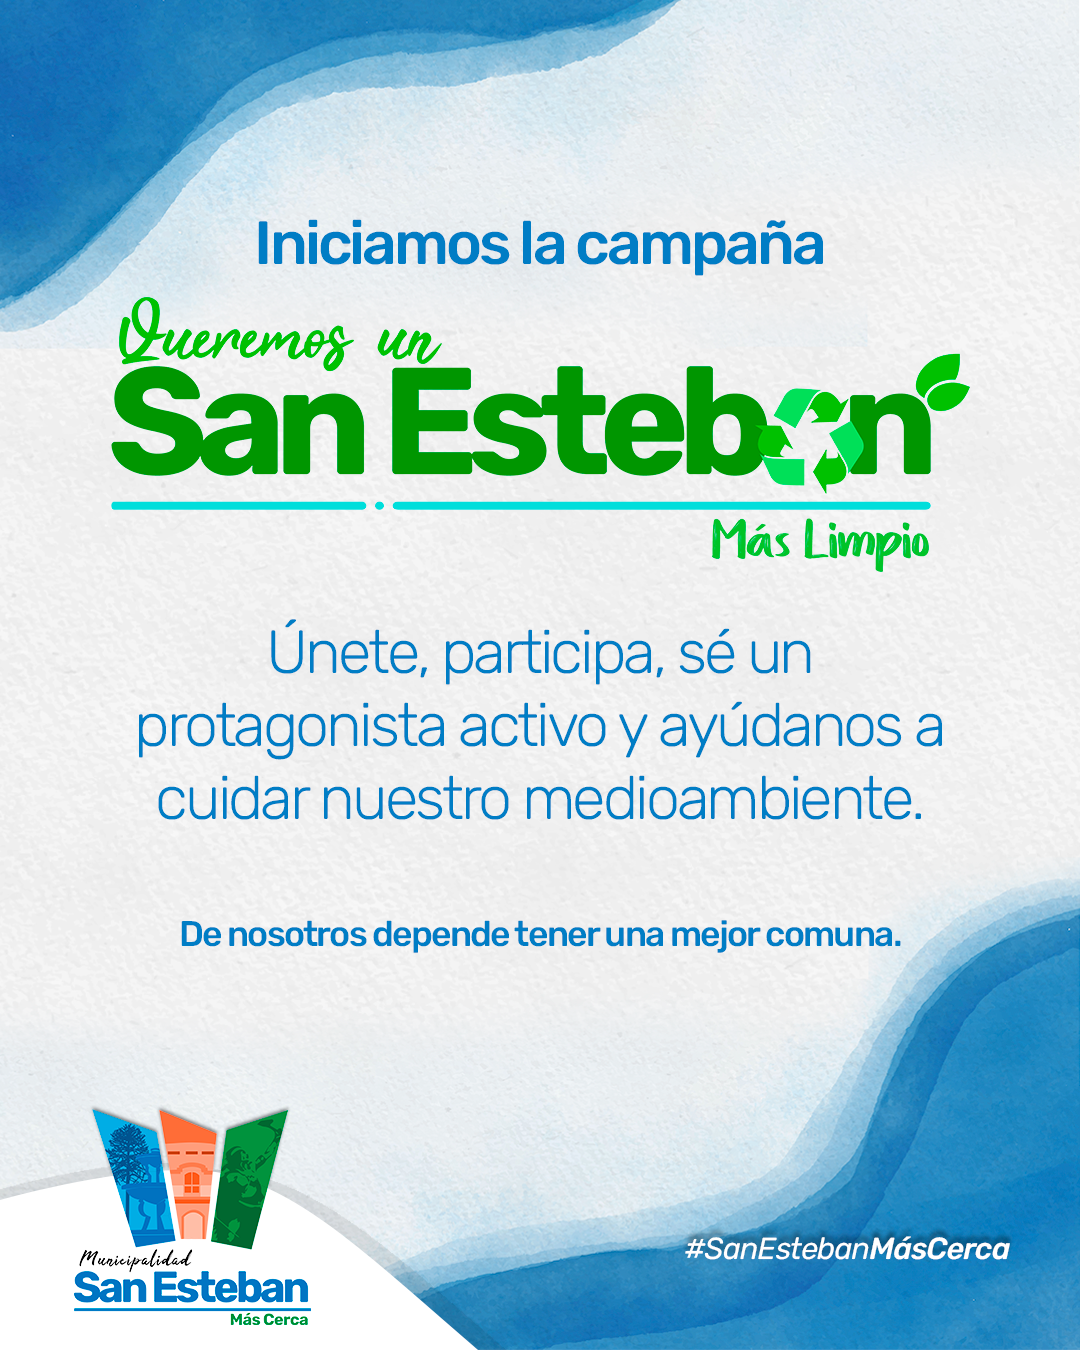 SAN ESTEBAN: Municipio promueve campaña “Queremos un San Esteban más limpio” incentivando, educando y concientizando sobre el cuidado medioambiental